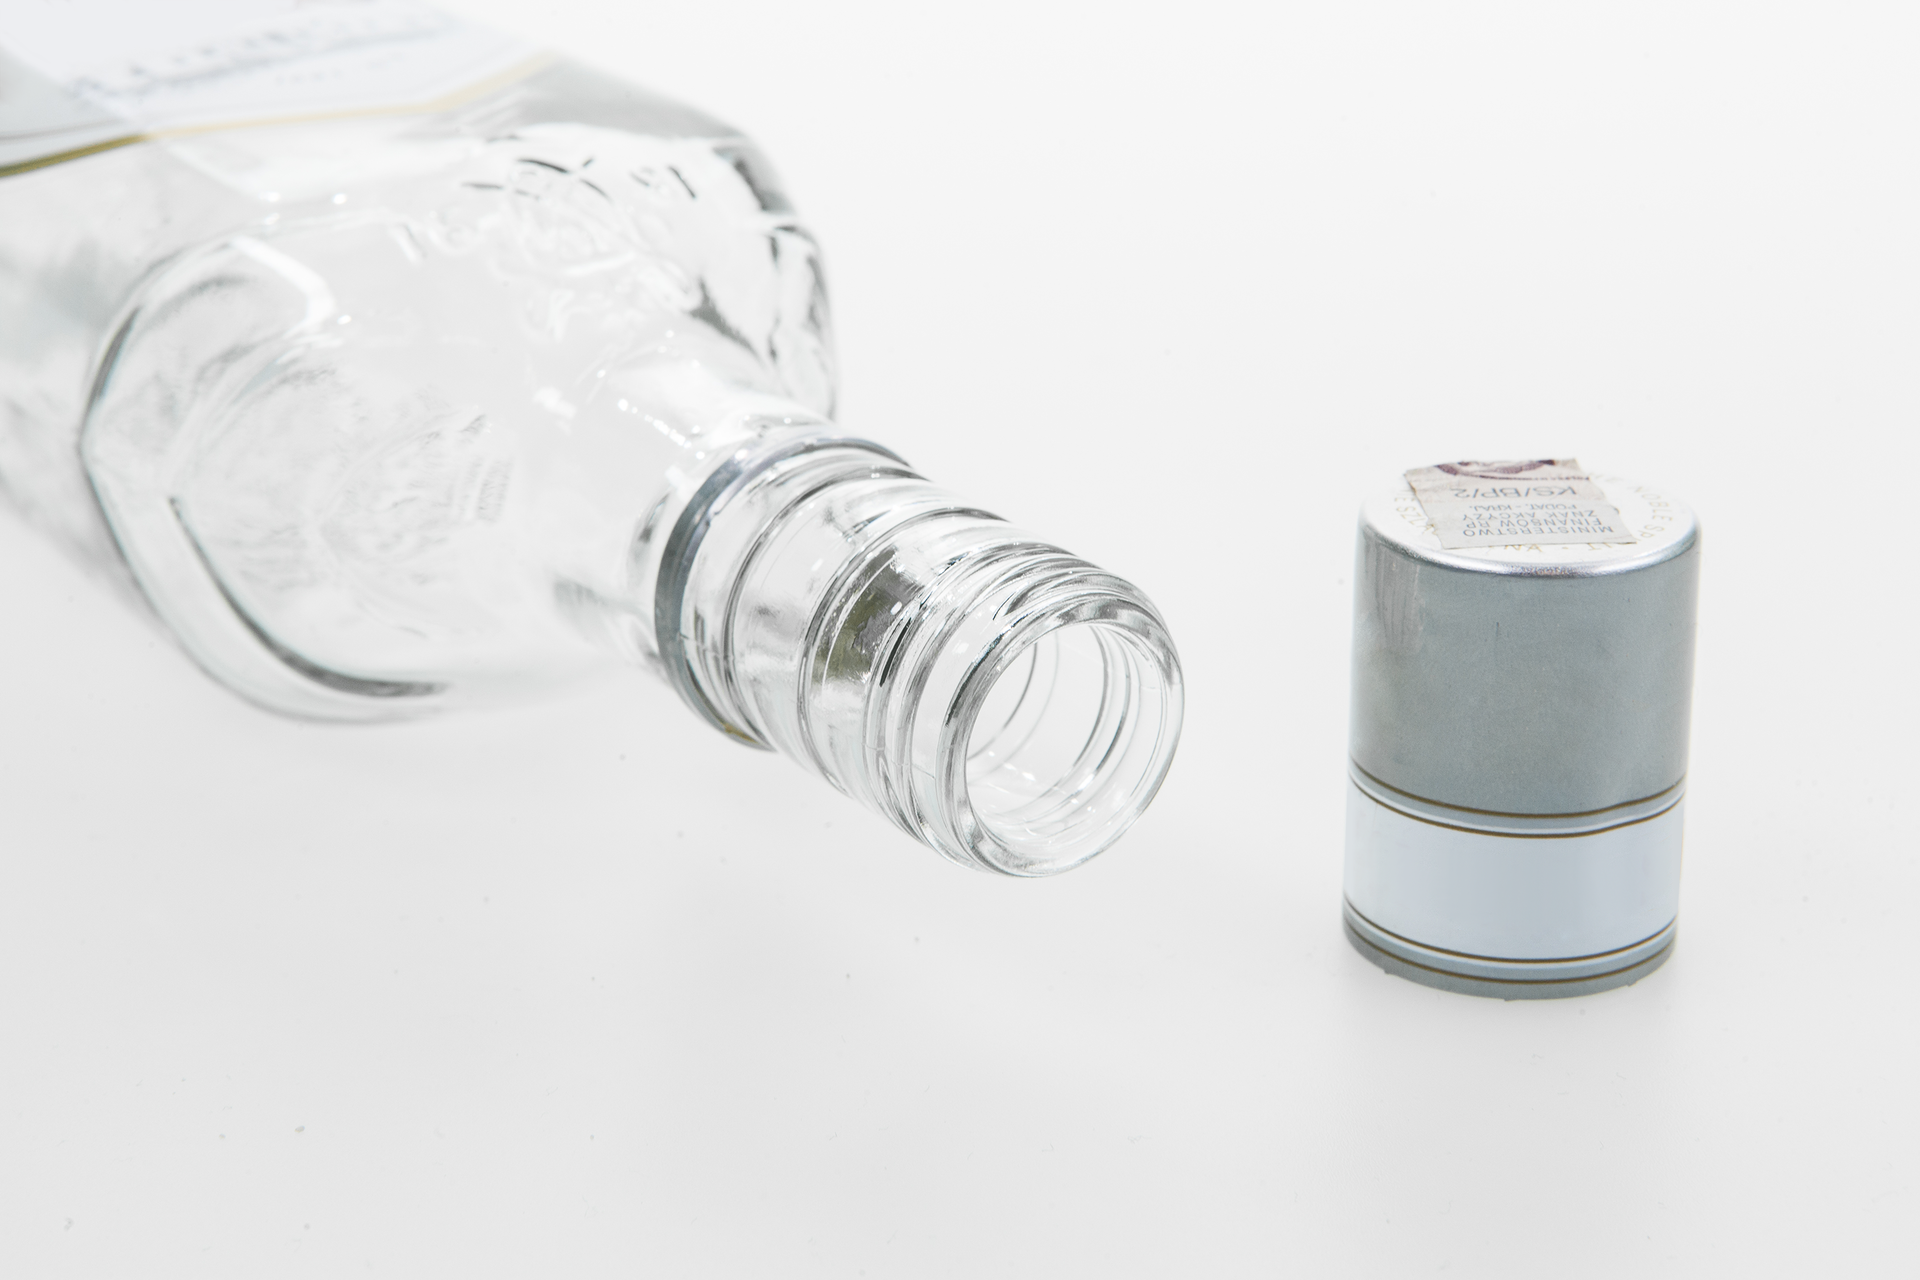 Drugie zdjęcie przedstawia leżącą szklaną butelkę skierowaną otworem w kierunku prawego rogu zdjęcia. Naprzeciw szara długa nakrętka butelki.